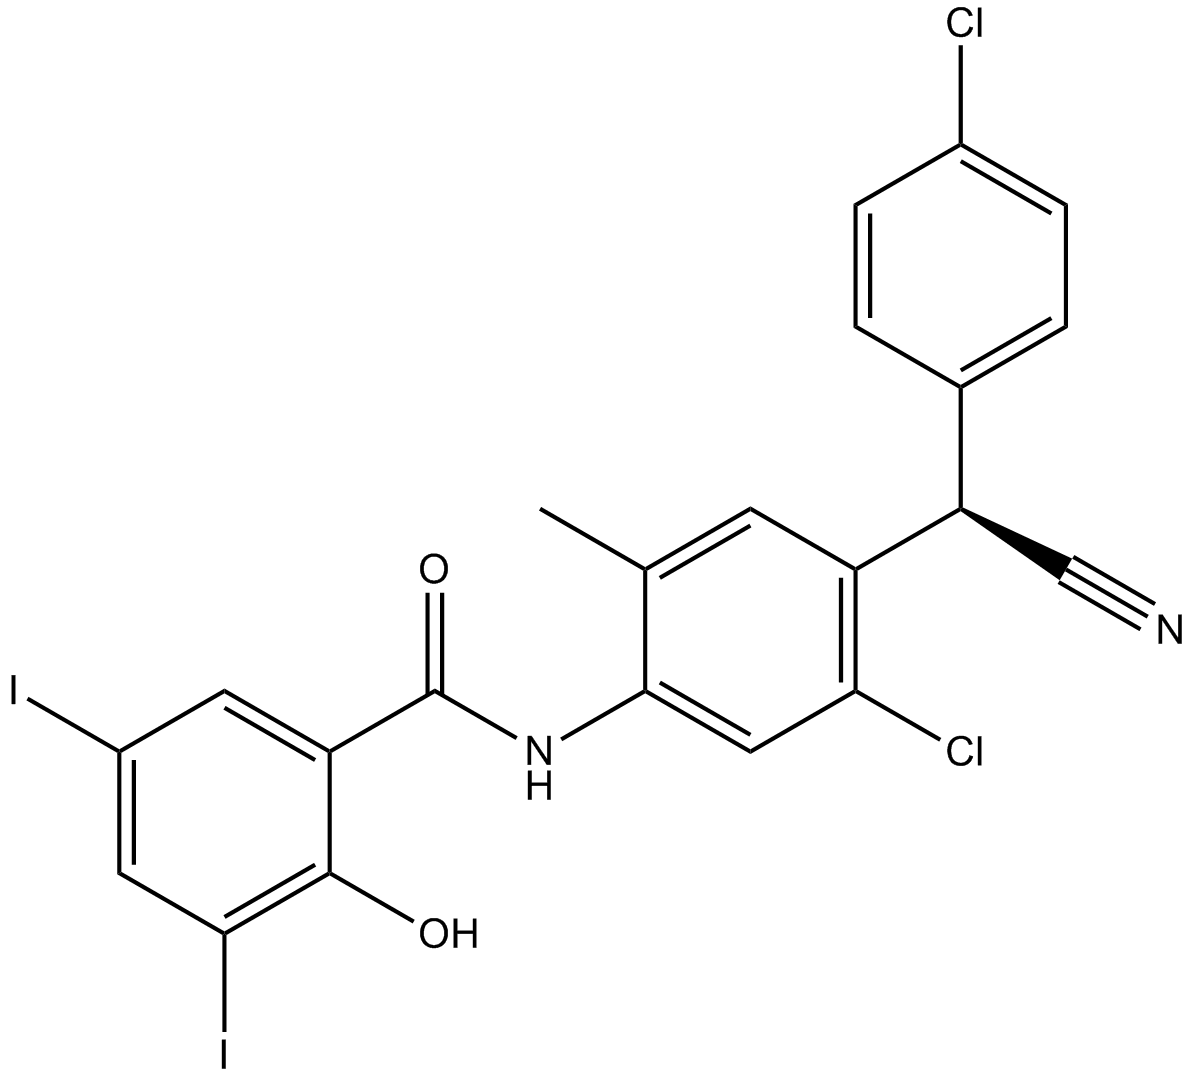 Closantel Chemical Structure